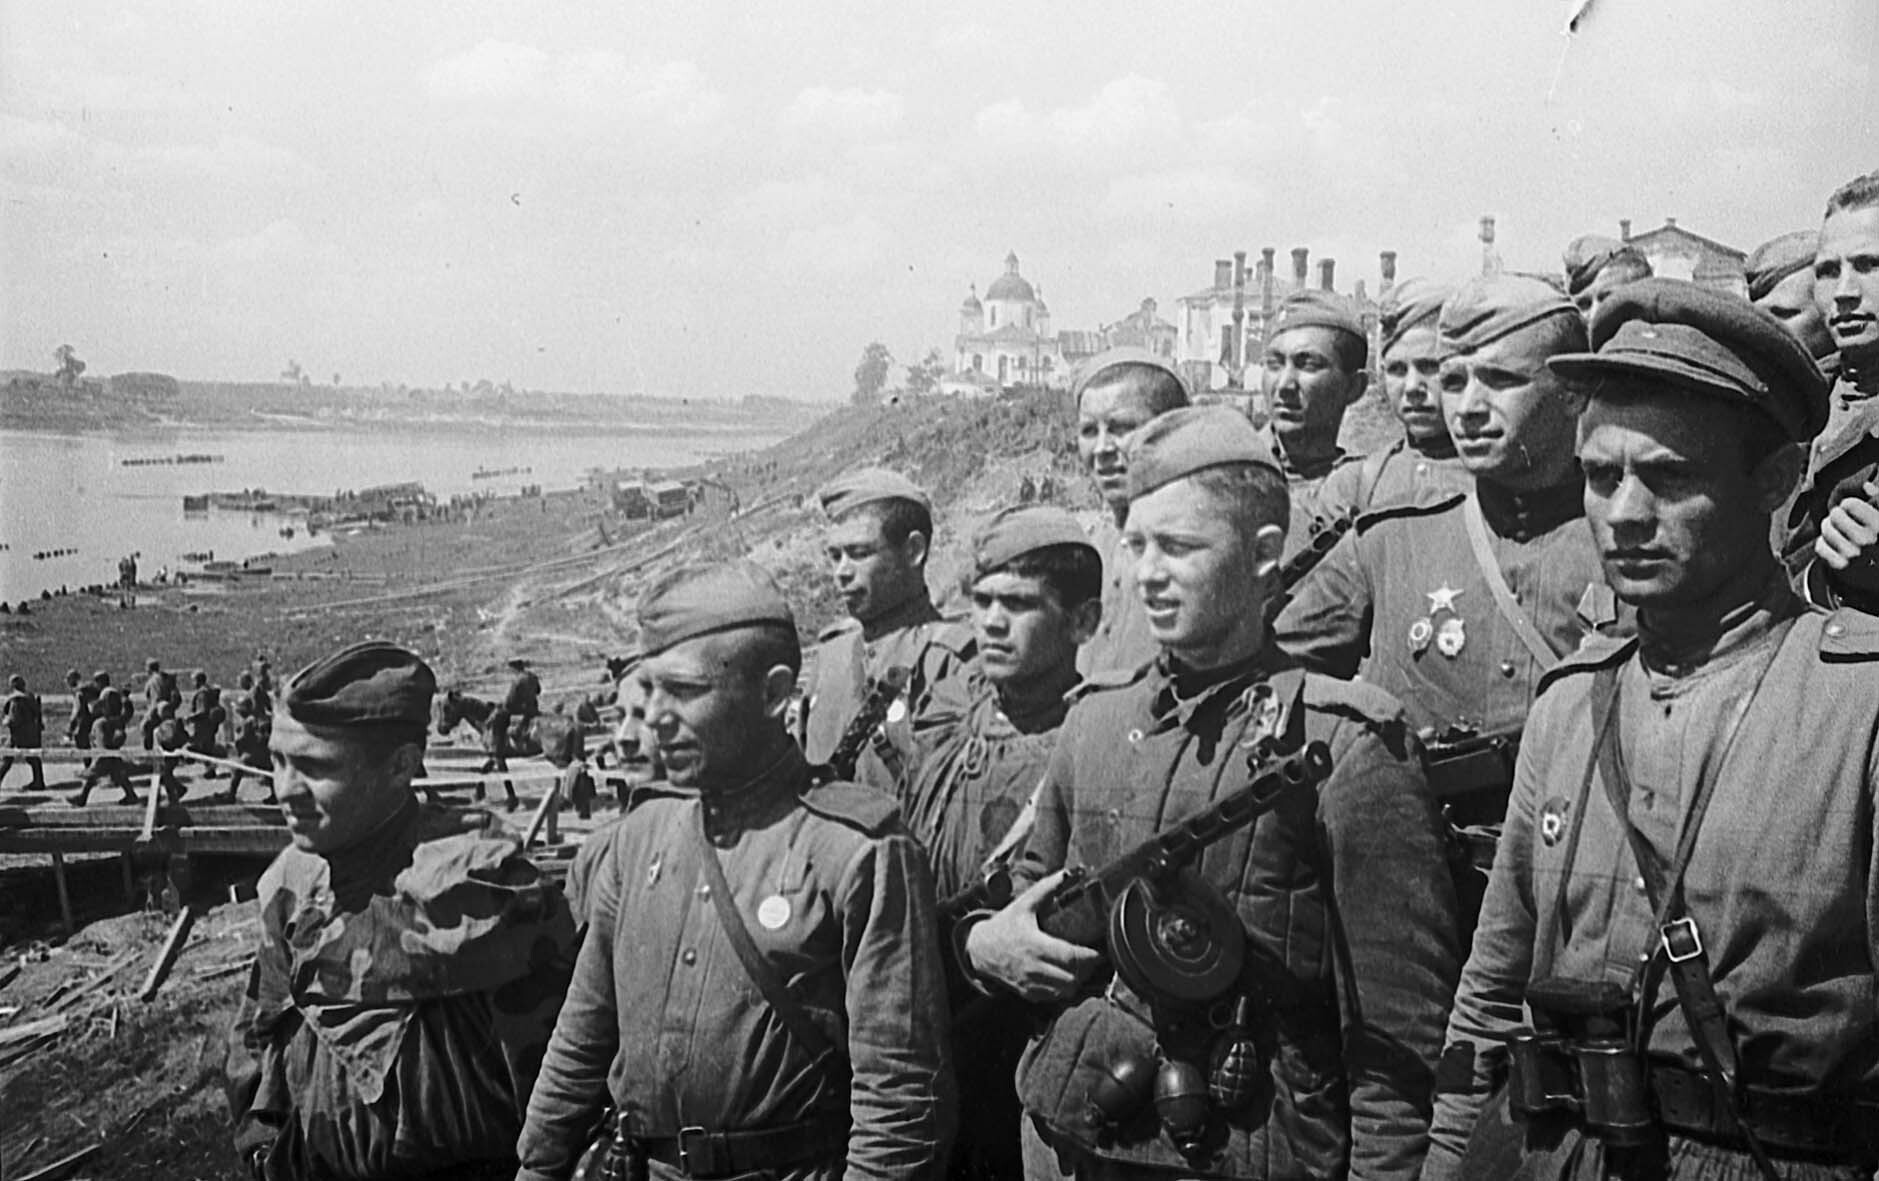 Soldaten des 274. Gardeschützenregiments in Polozk nach der Befreiung, 4. Juli 1944 (Museum Berlin-Karlshorst RR-P)